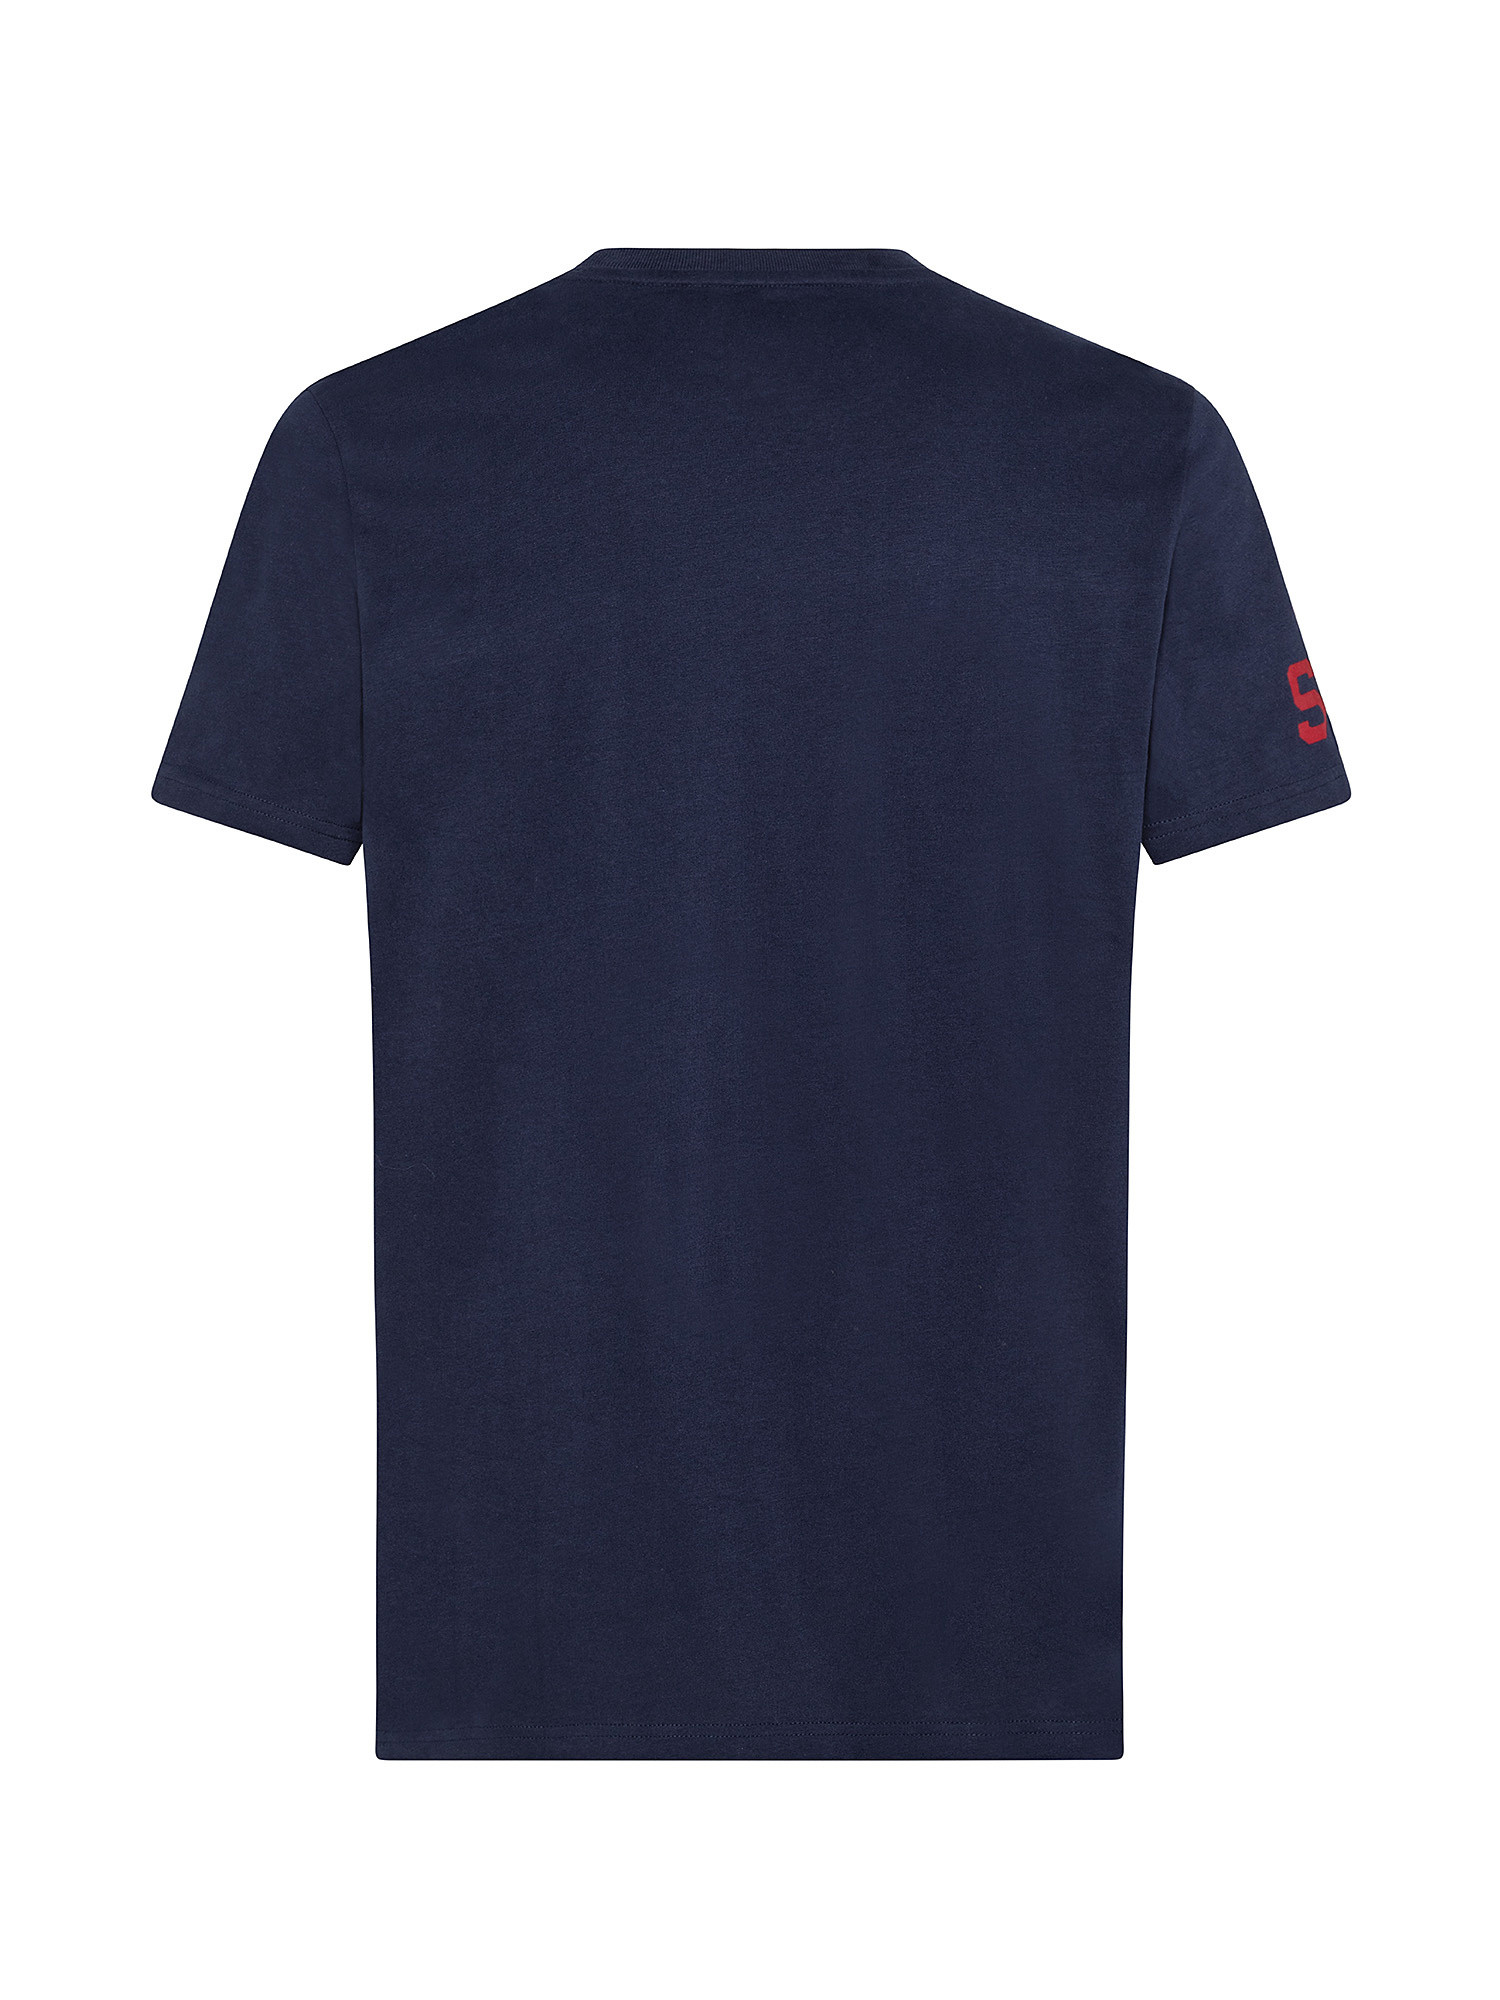 Vintage Athletic t-Shirt, Blue, large image number 1